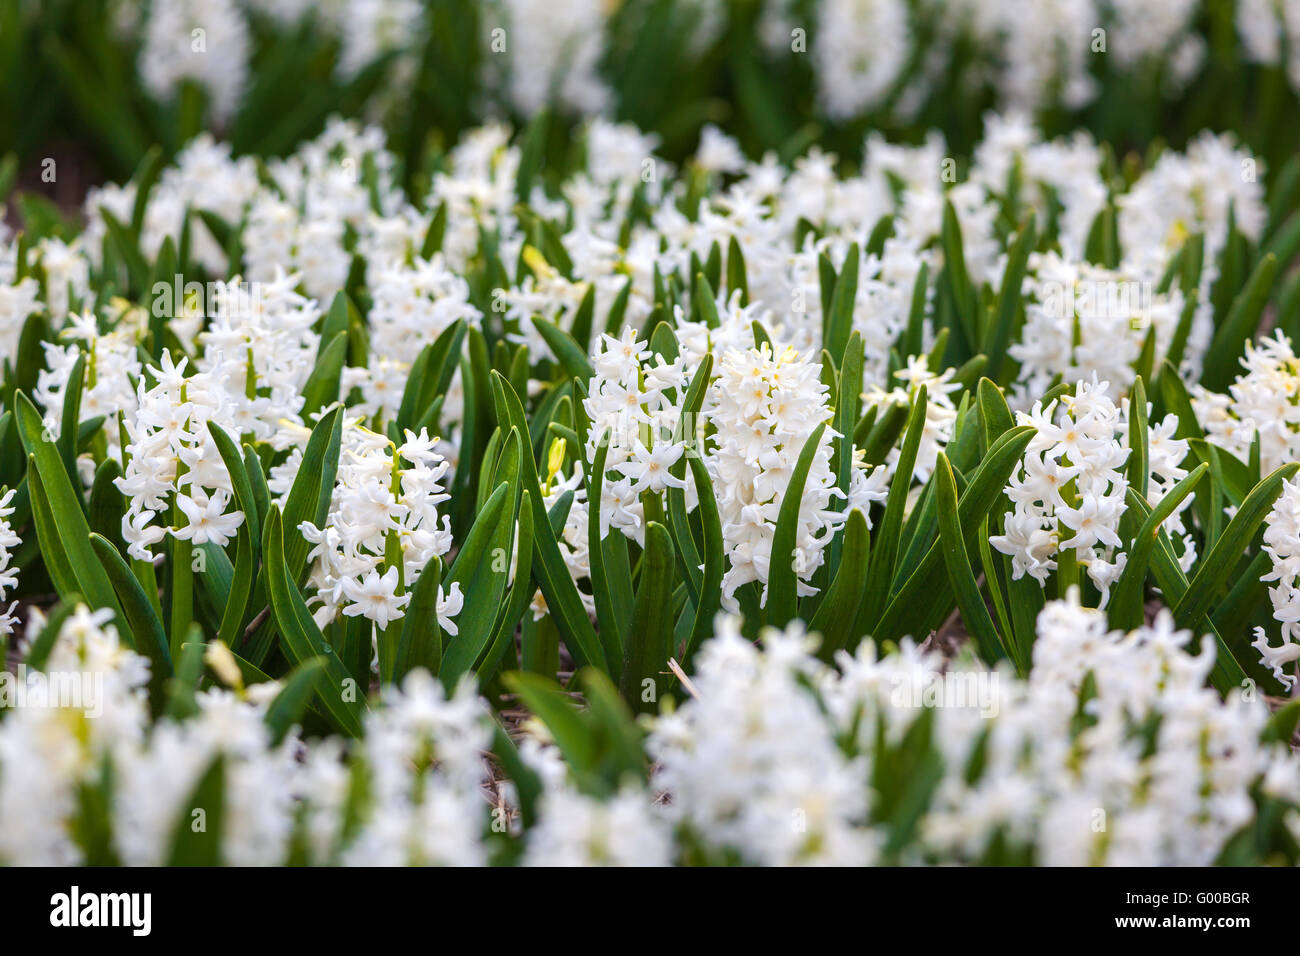 Hyazinthe. Schöne weiße Hyazinthe Blüten im Frühlingsgarten, lebendige Blumenkarte, Blumenfelder in Niederlande. Stockfoto